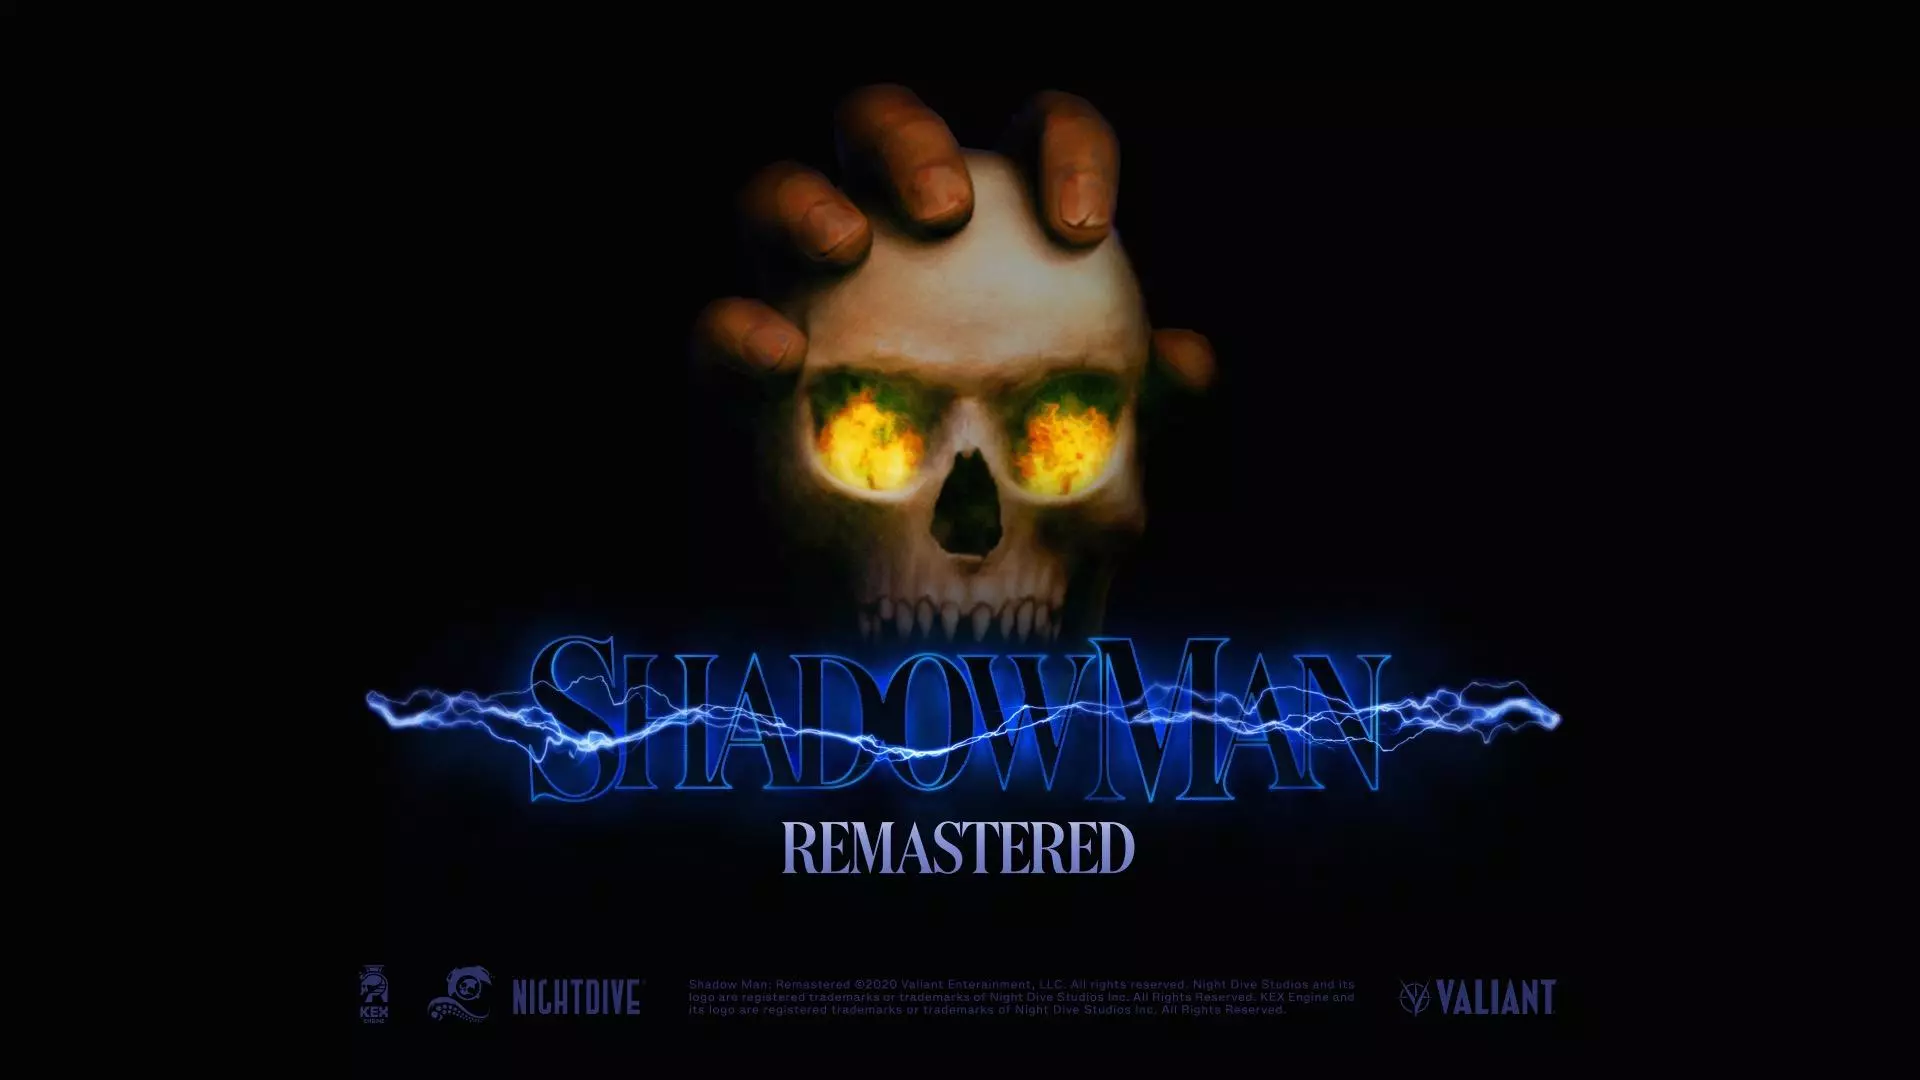 Компания Nightdive Studios в сотрудничестве с лейблом комиксов Valiant Entertainment, объявила о выпуске Shadow Man Remastered, улучшенной версии приключенческой игры 1999 года, которая должна быть выпущена для ПК и консолей.